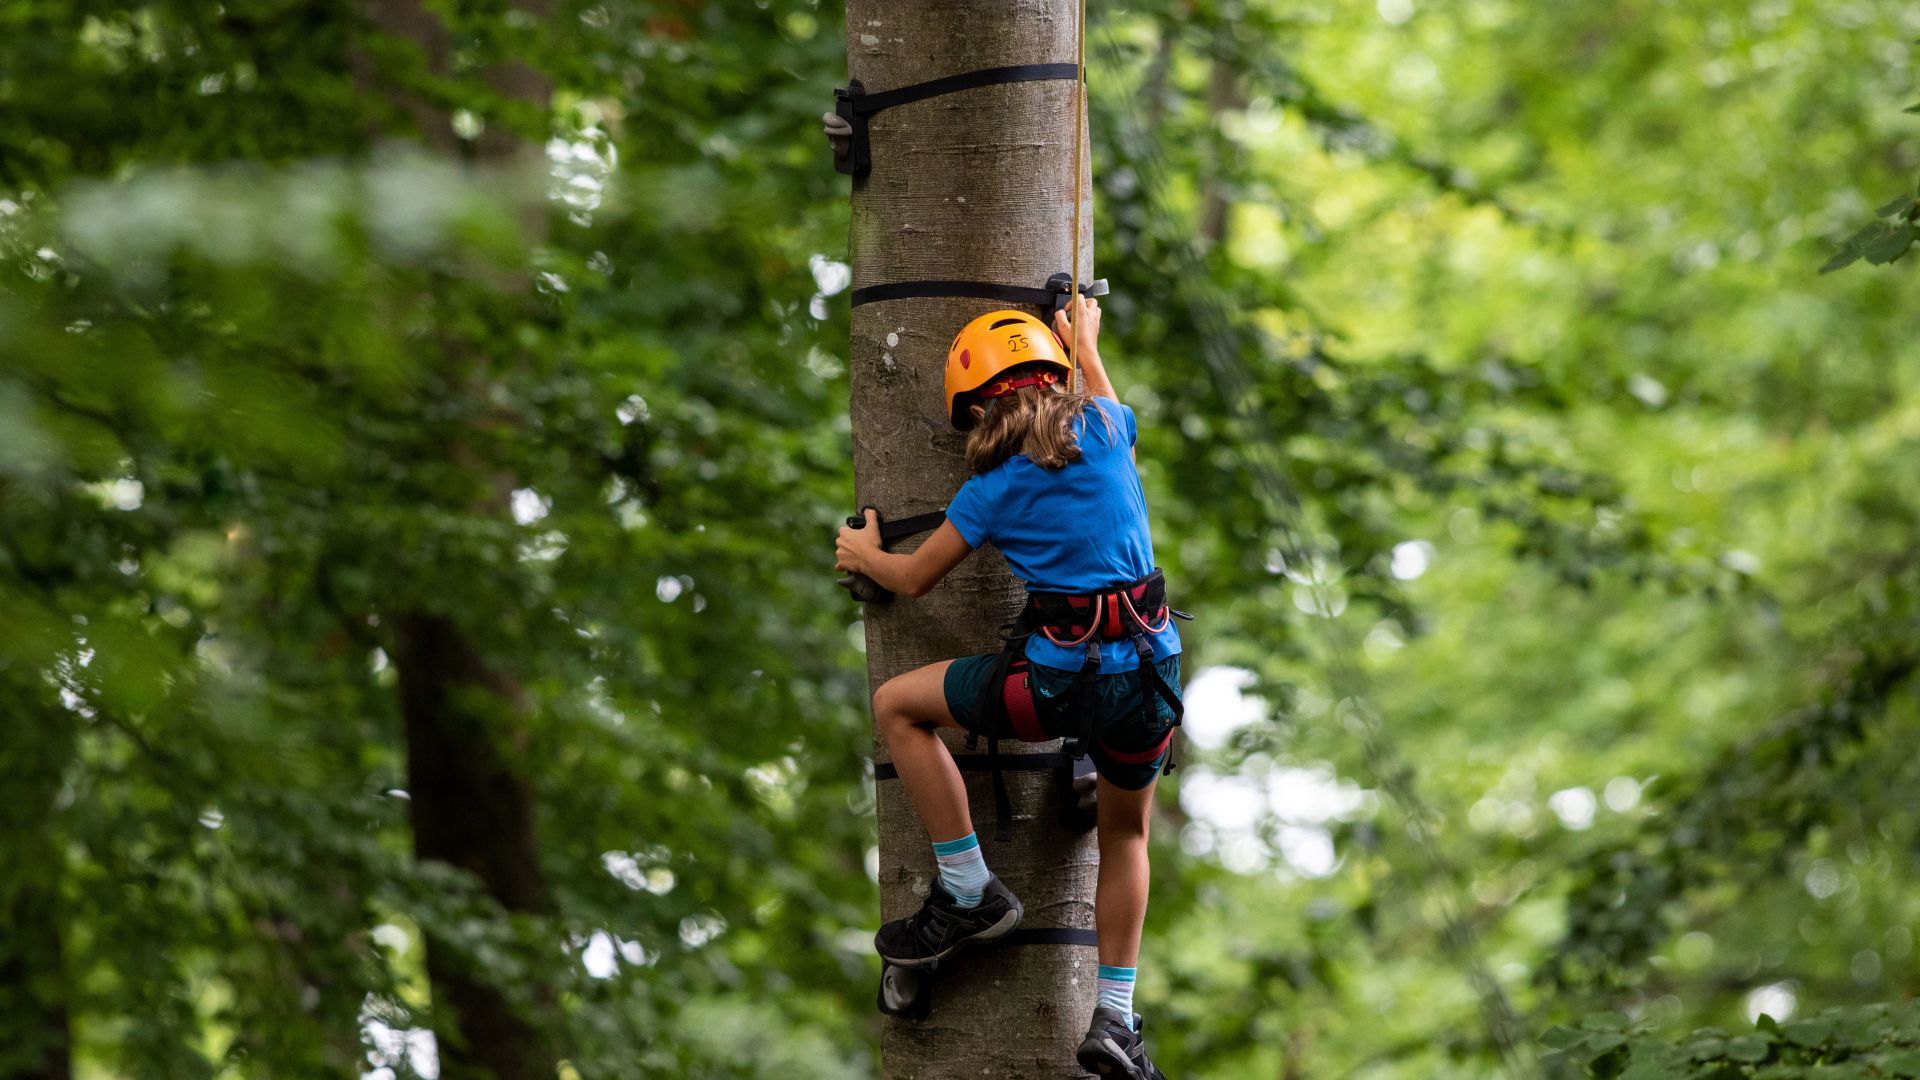 Bad Mergentheim: Child climbs on tree, wildlife park